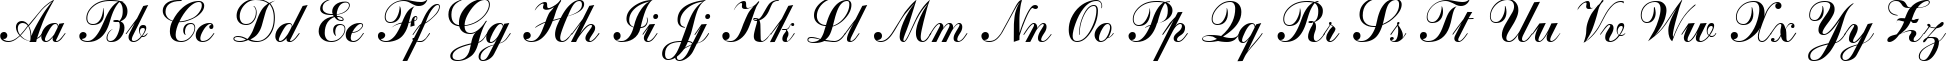 Пример написания английского алфавита шрифтом Calligraph